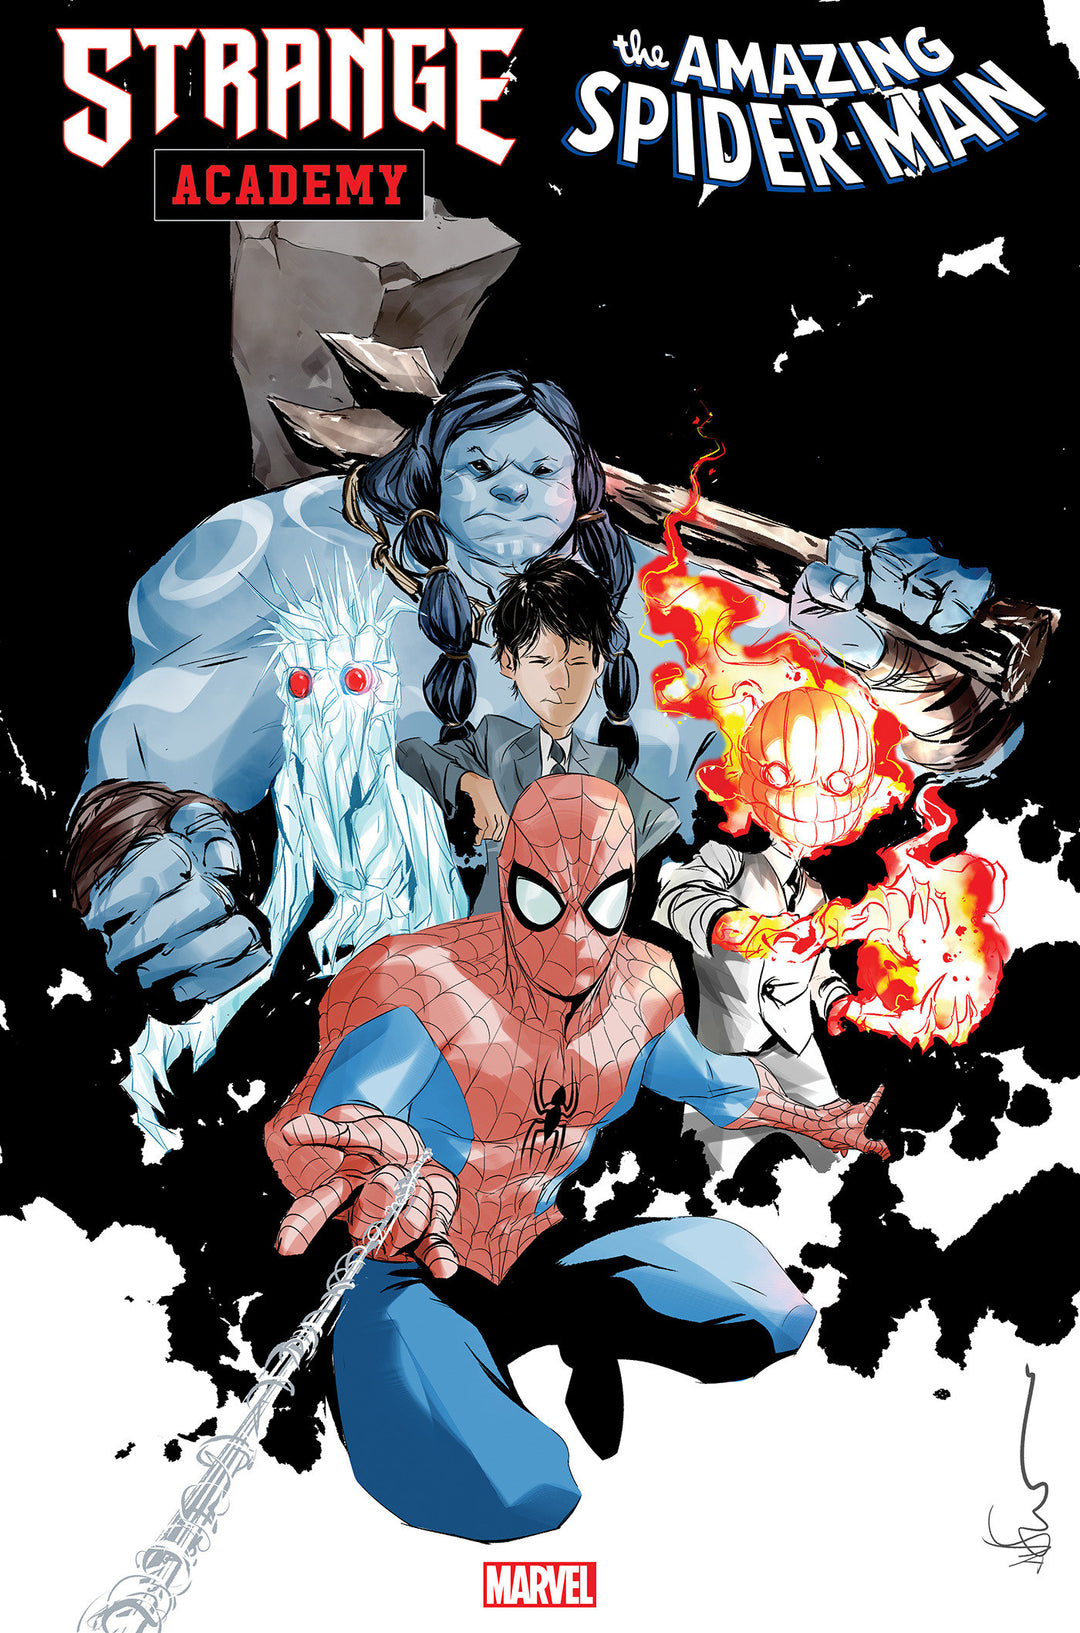 Strange Academy: Amazing Spider-Man #1 Variant (1:25) Dustin Nguyen Edition